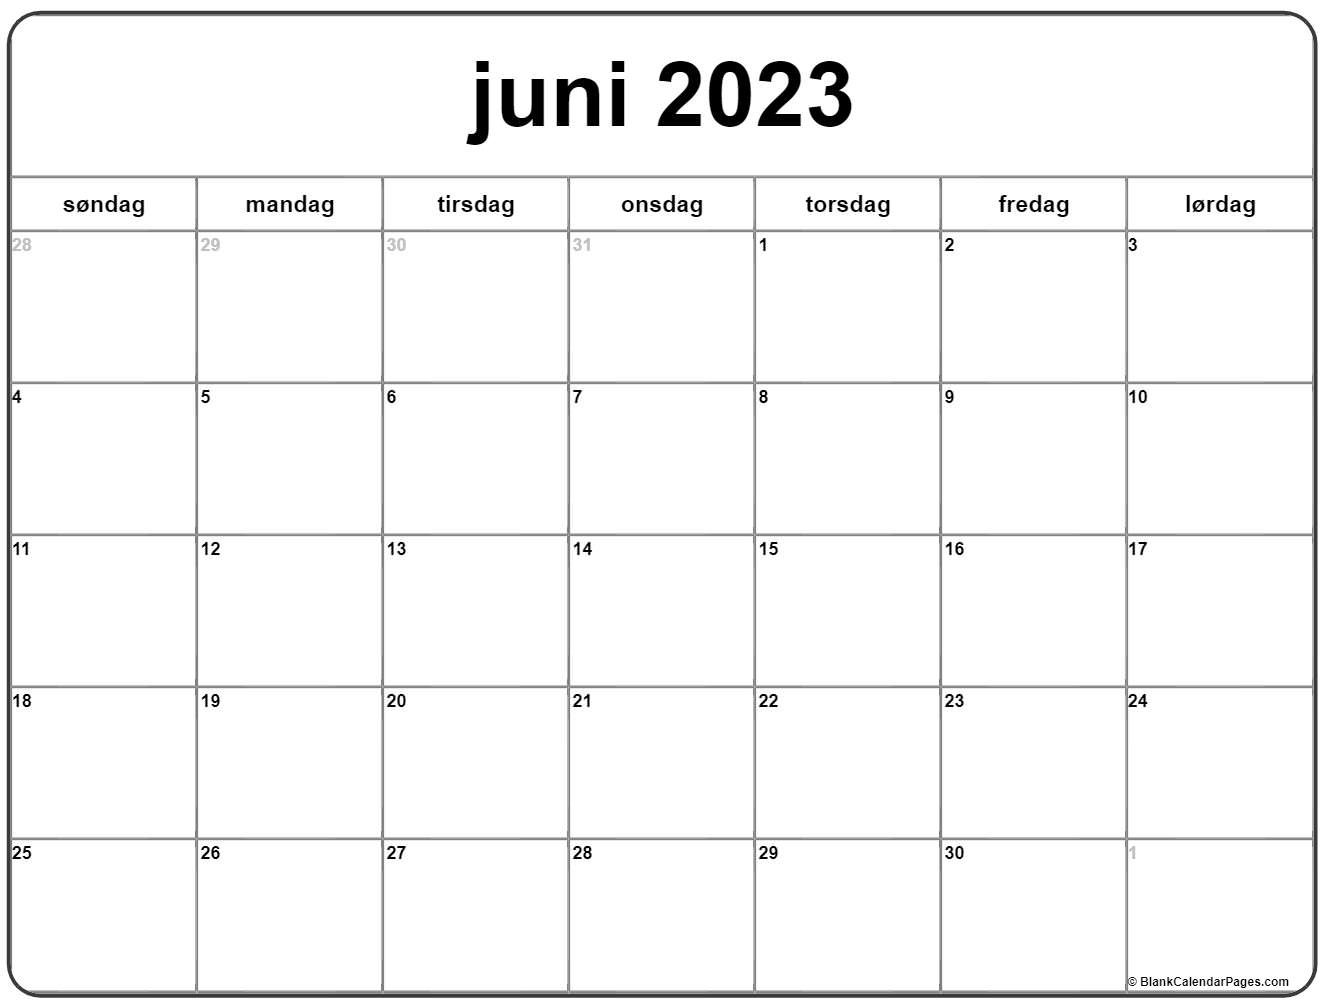 juni | Kalender juni